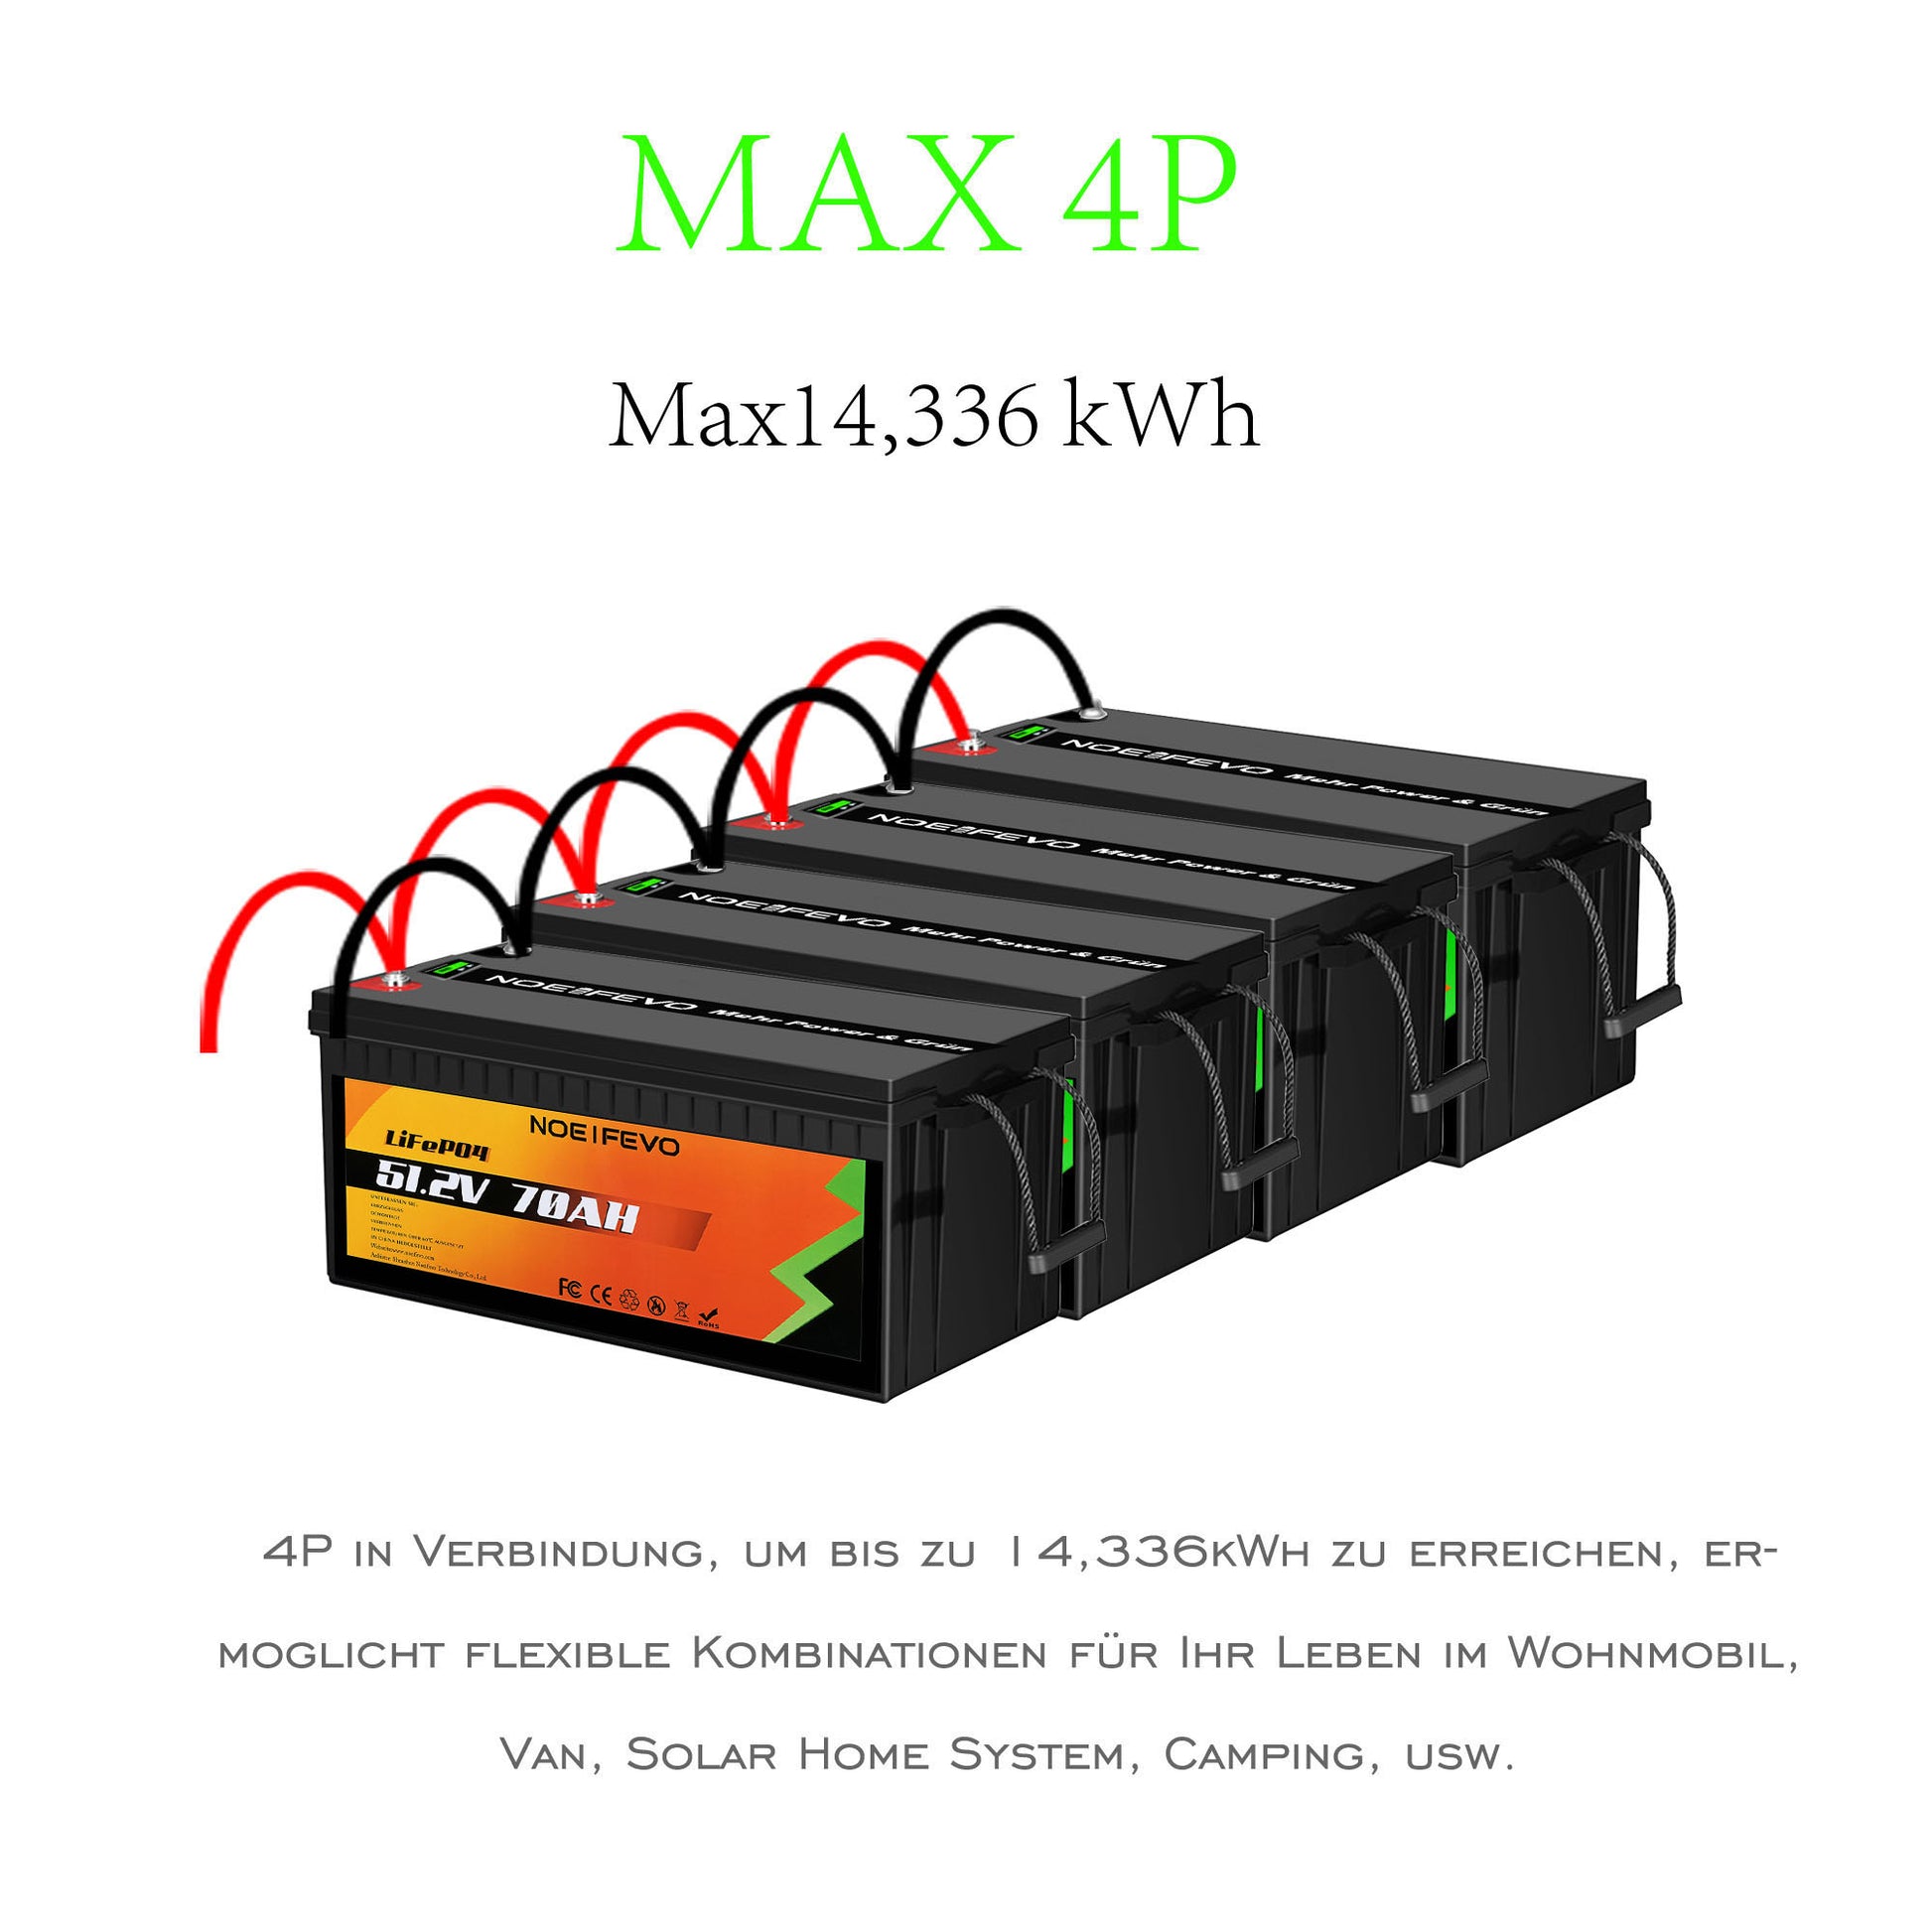 NOEIFEVO 3.5KWh 51.2V 70AH LiFePO4 Lithium Battery , 80A BMS,with 58.4 –  Smart LifePO4 Batterie & Heimspeicherung von Energie & Intelligentes  Ladegerät